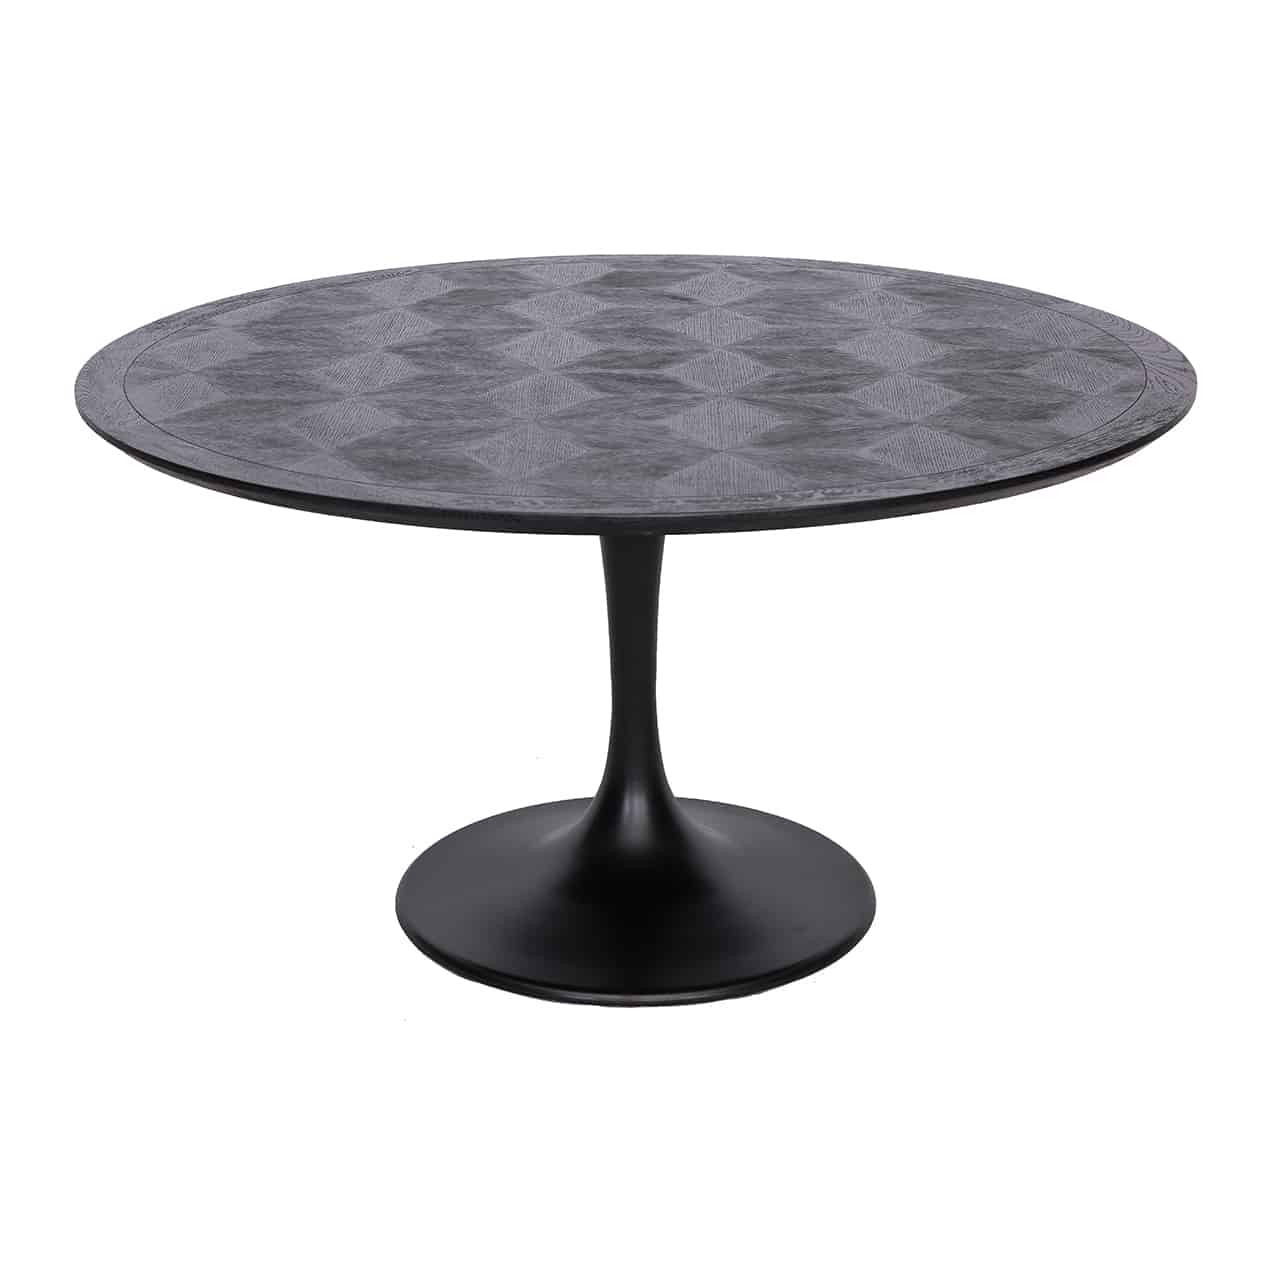 Schwarzer Esstisch mit einem röhrenförmigen Fuß auf einem großen Standteller, darauf eine runde Holzplatte mit Rautenmuster.